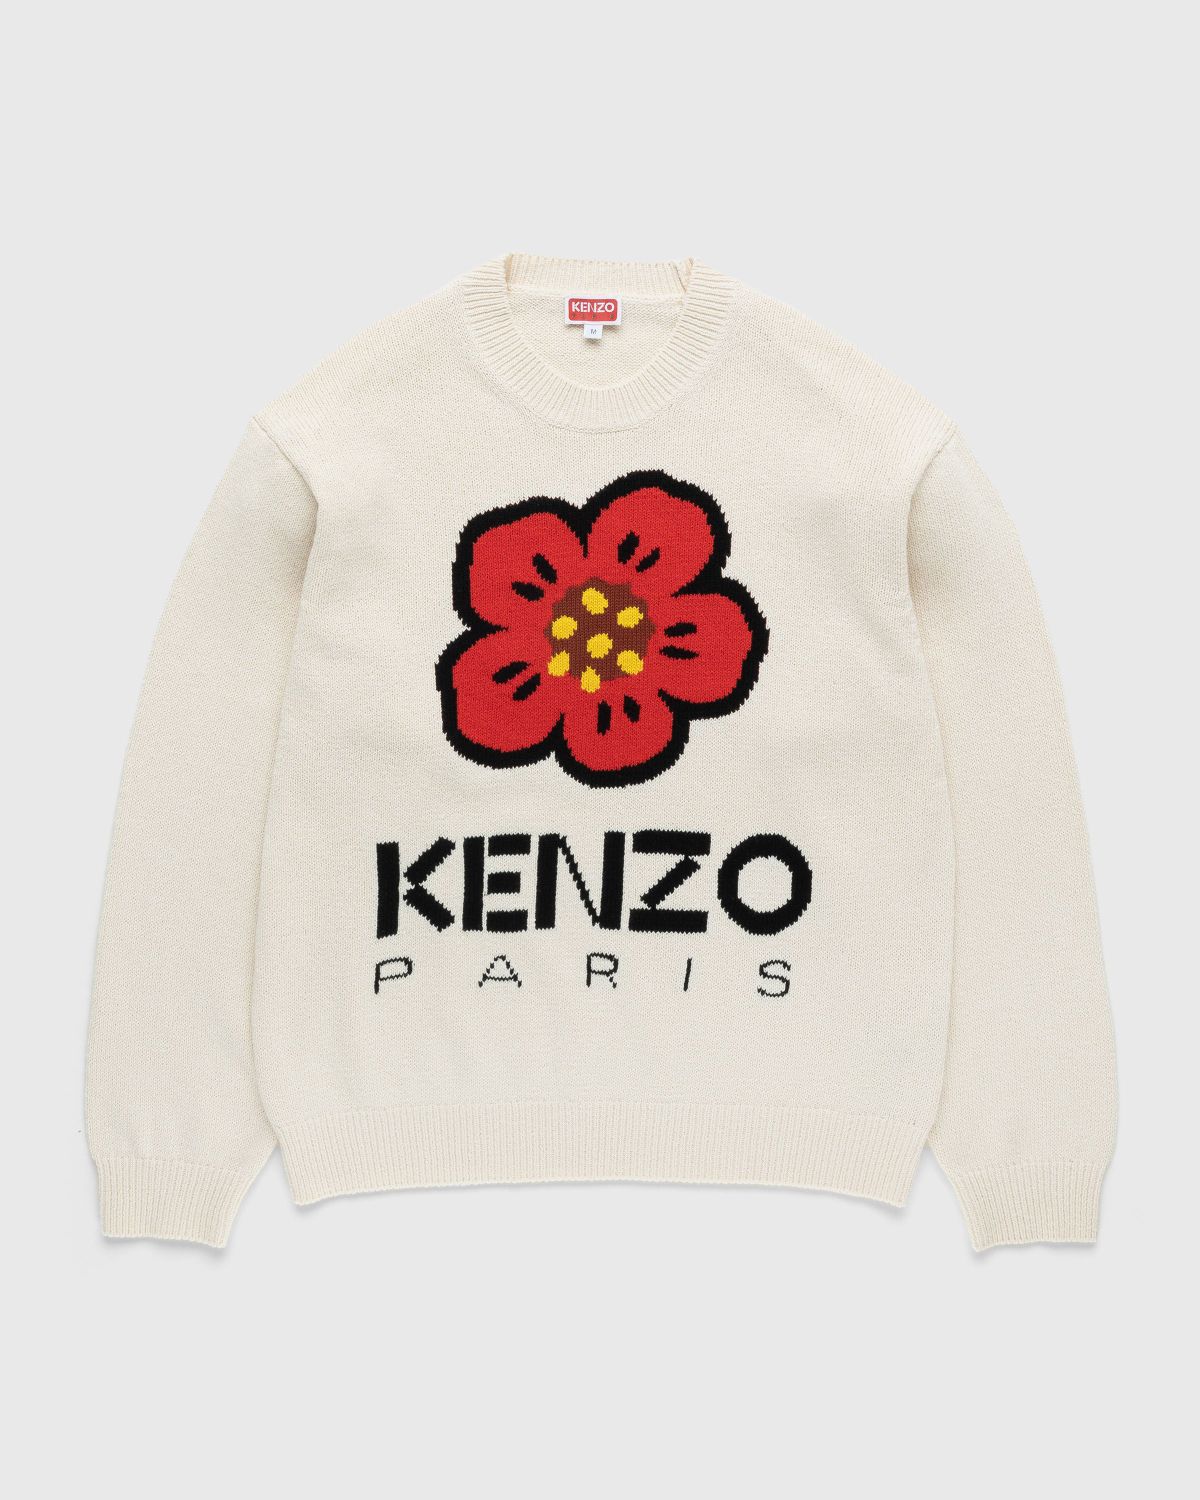 KENZO x Nigo Boke Flower Coach Jacket Navy